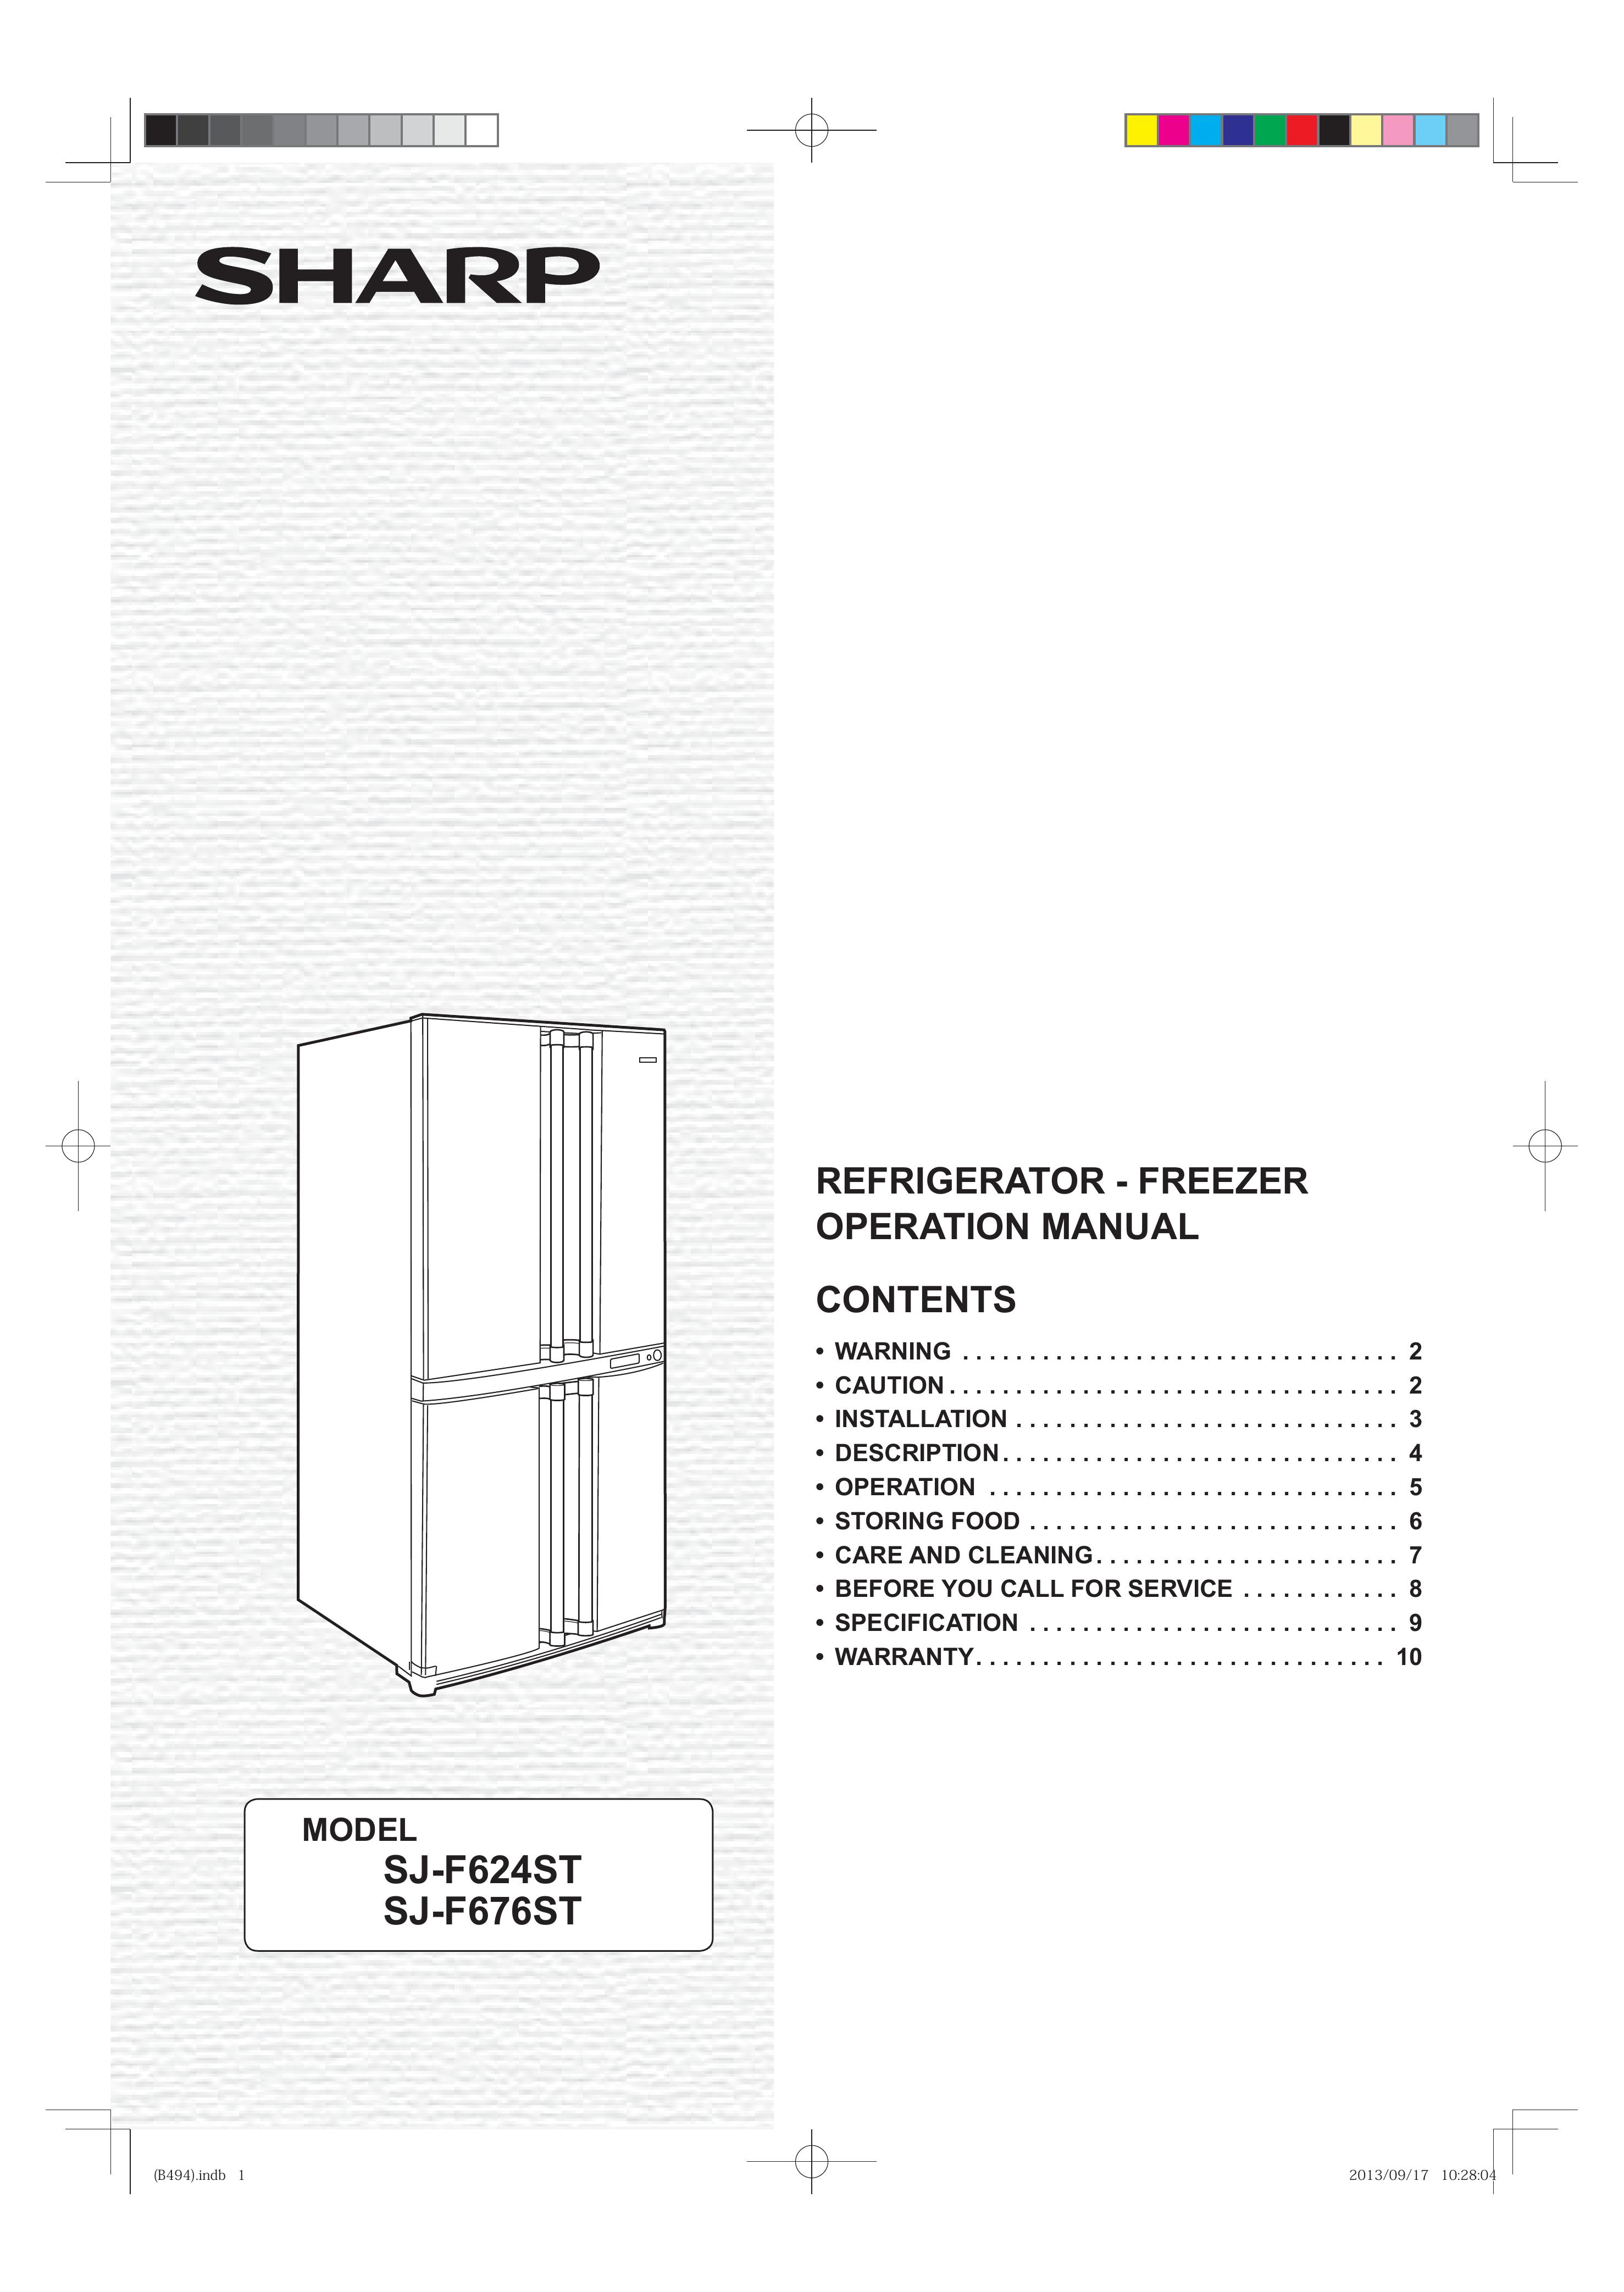 Sharp SJ-F676ST Refrigerator User Manual